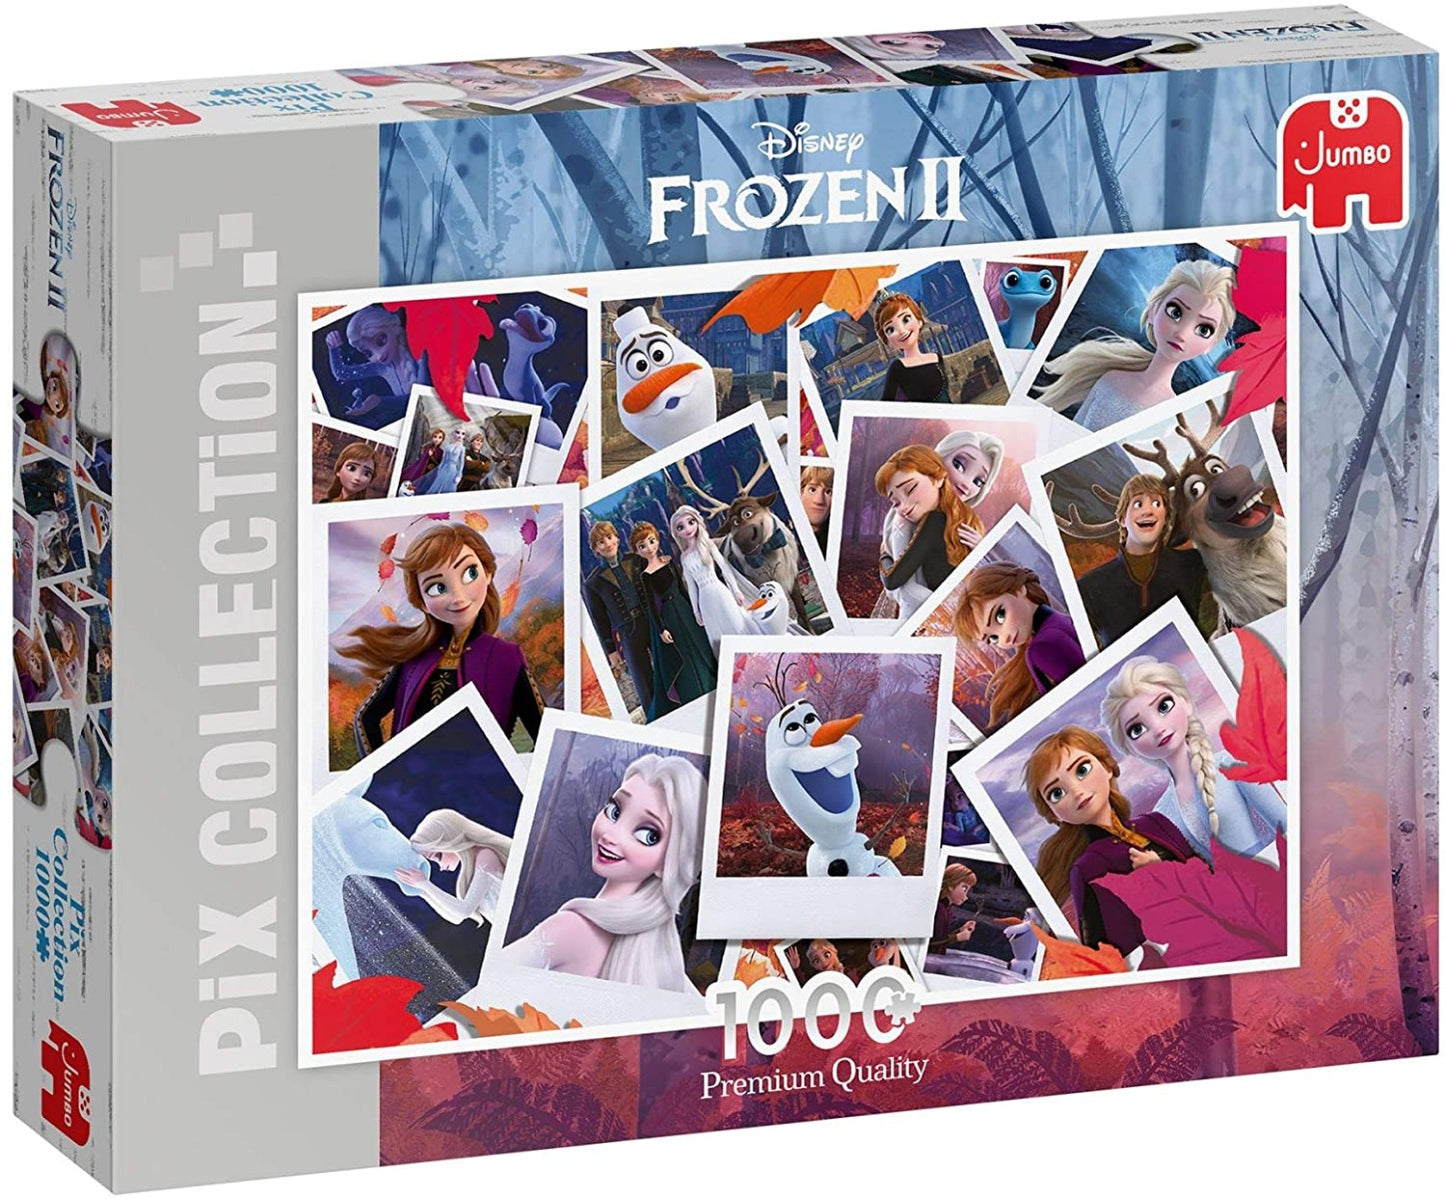 Jumbo - Pix Collection - Frozen 2 1000 Piece Jigsaws